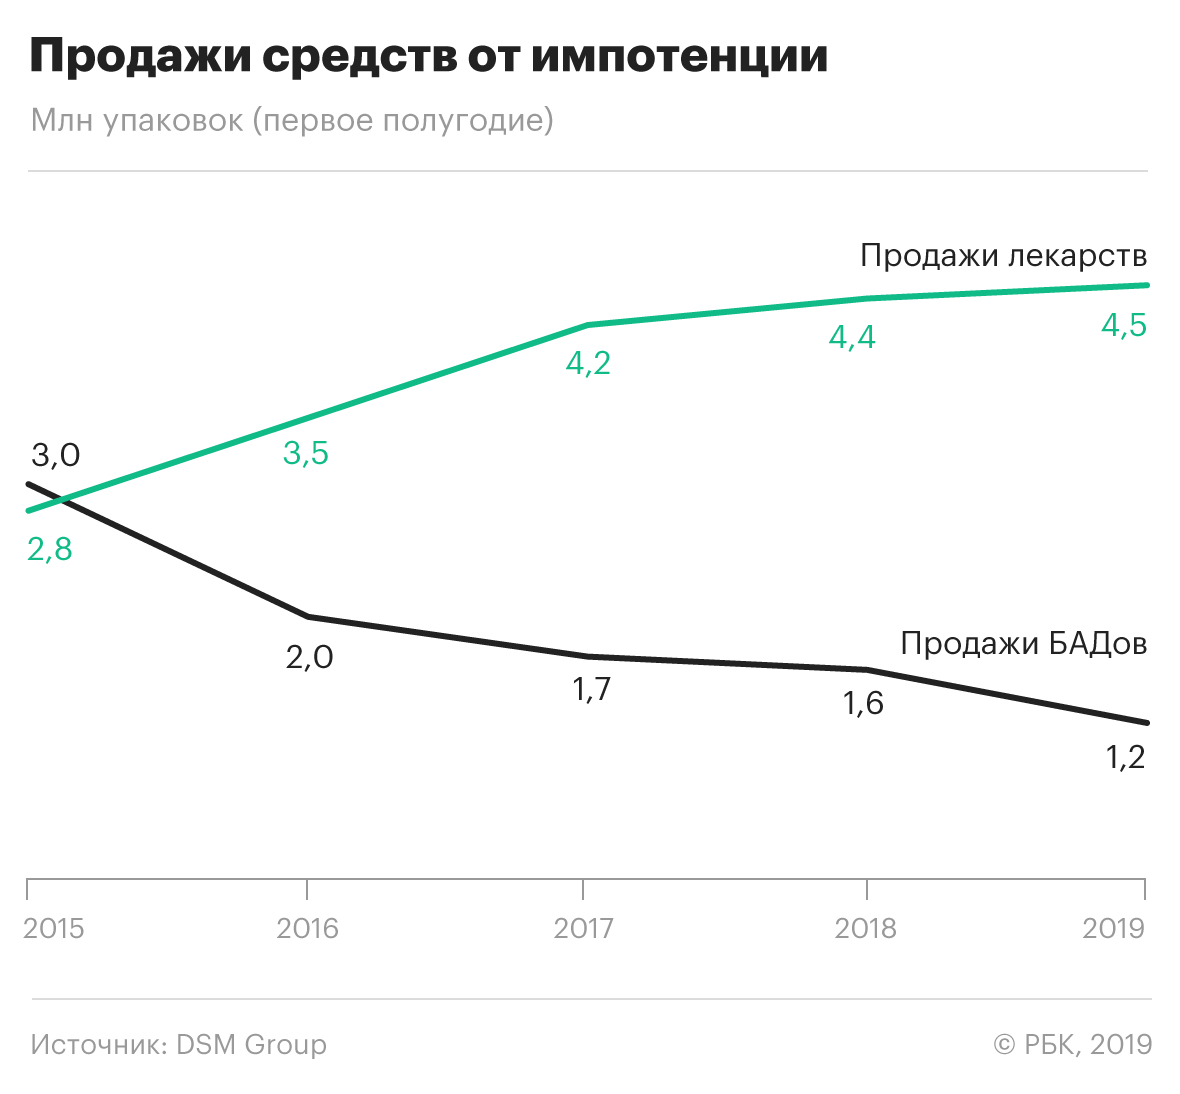 Продажи лекарств для потенции в России за пять лет выросли на 60%